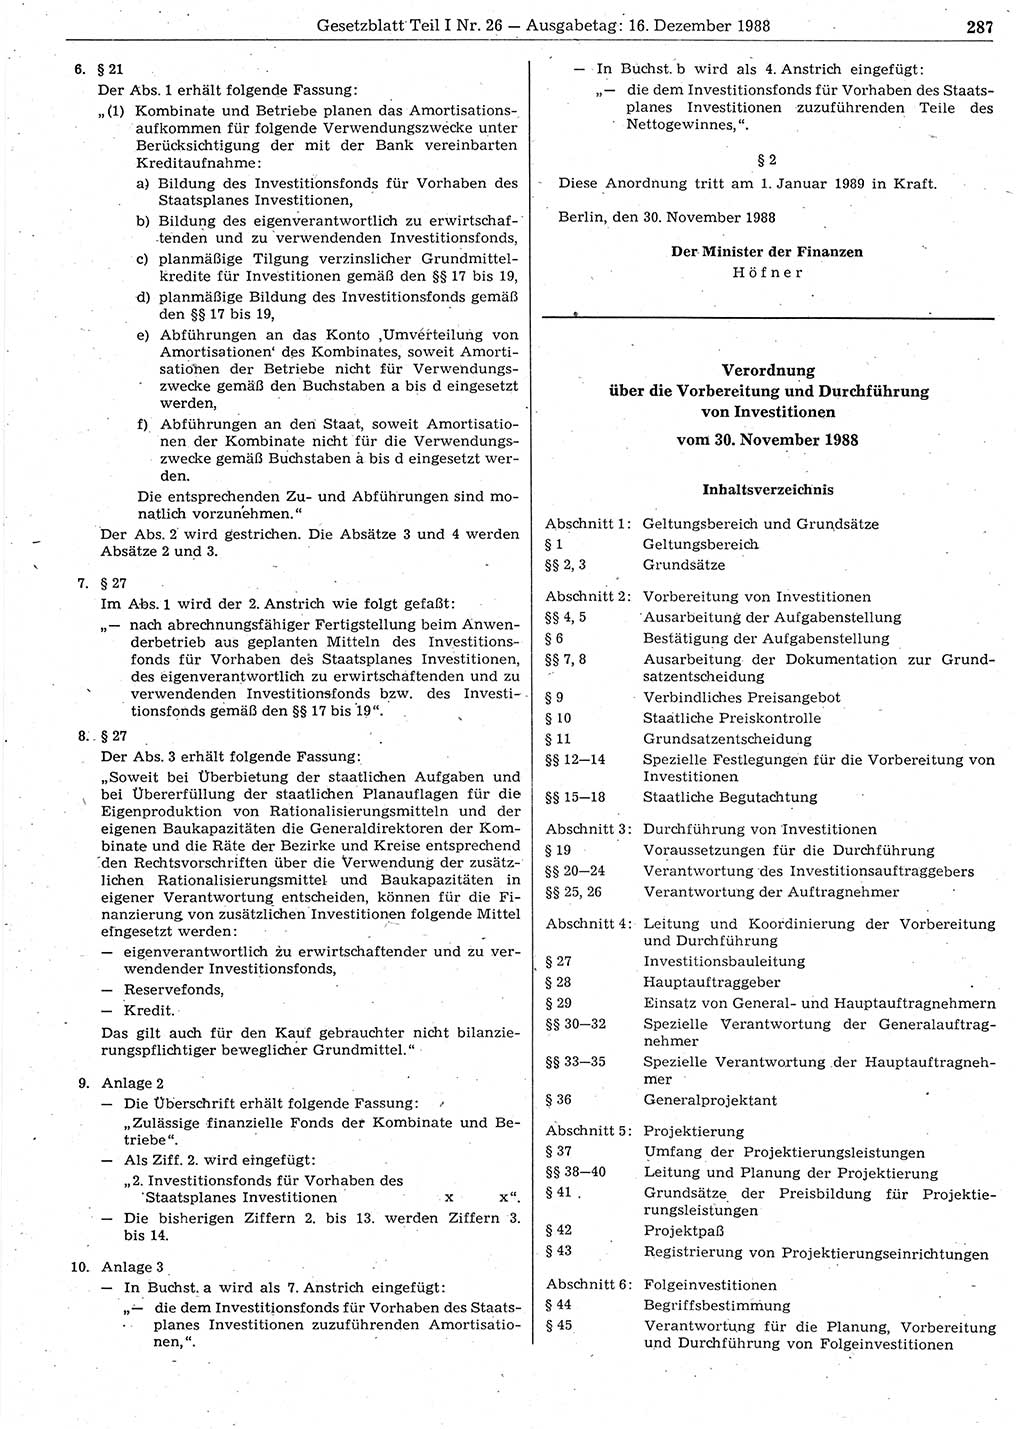 Gesetzblatt (GBl.) der Deutschen Demokratischen Republik (DDR) Teil Ⅰ 1988, Seite 287 (GBl. DDR Ⅰ 1988, S. 287)